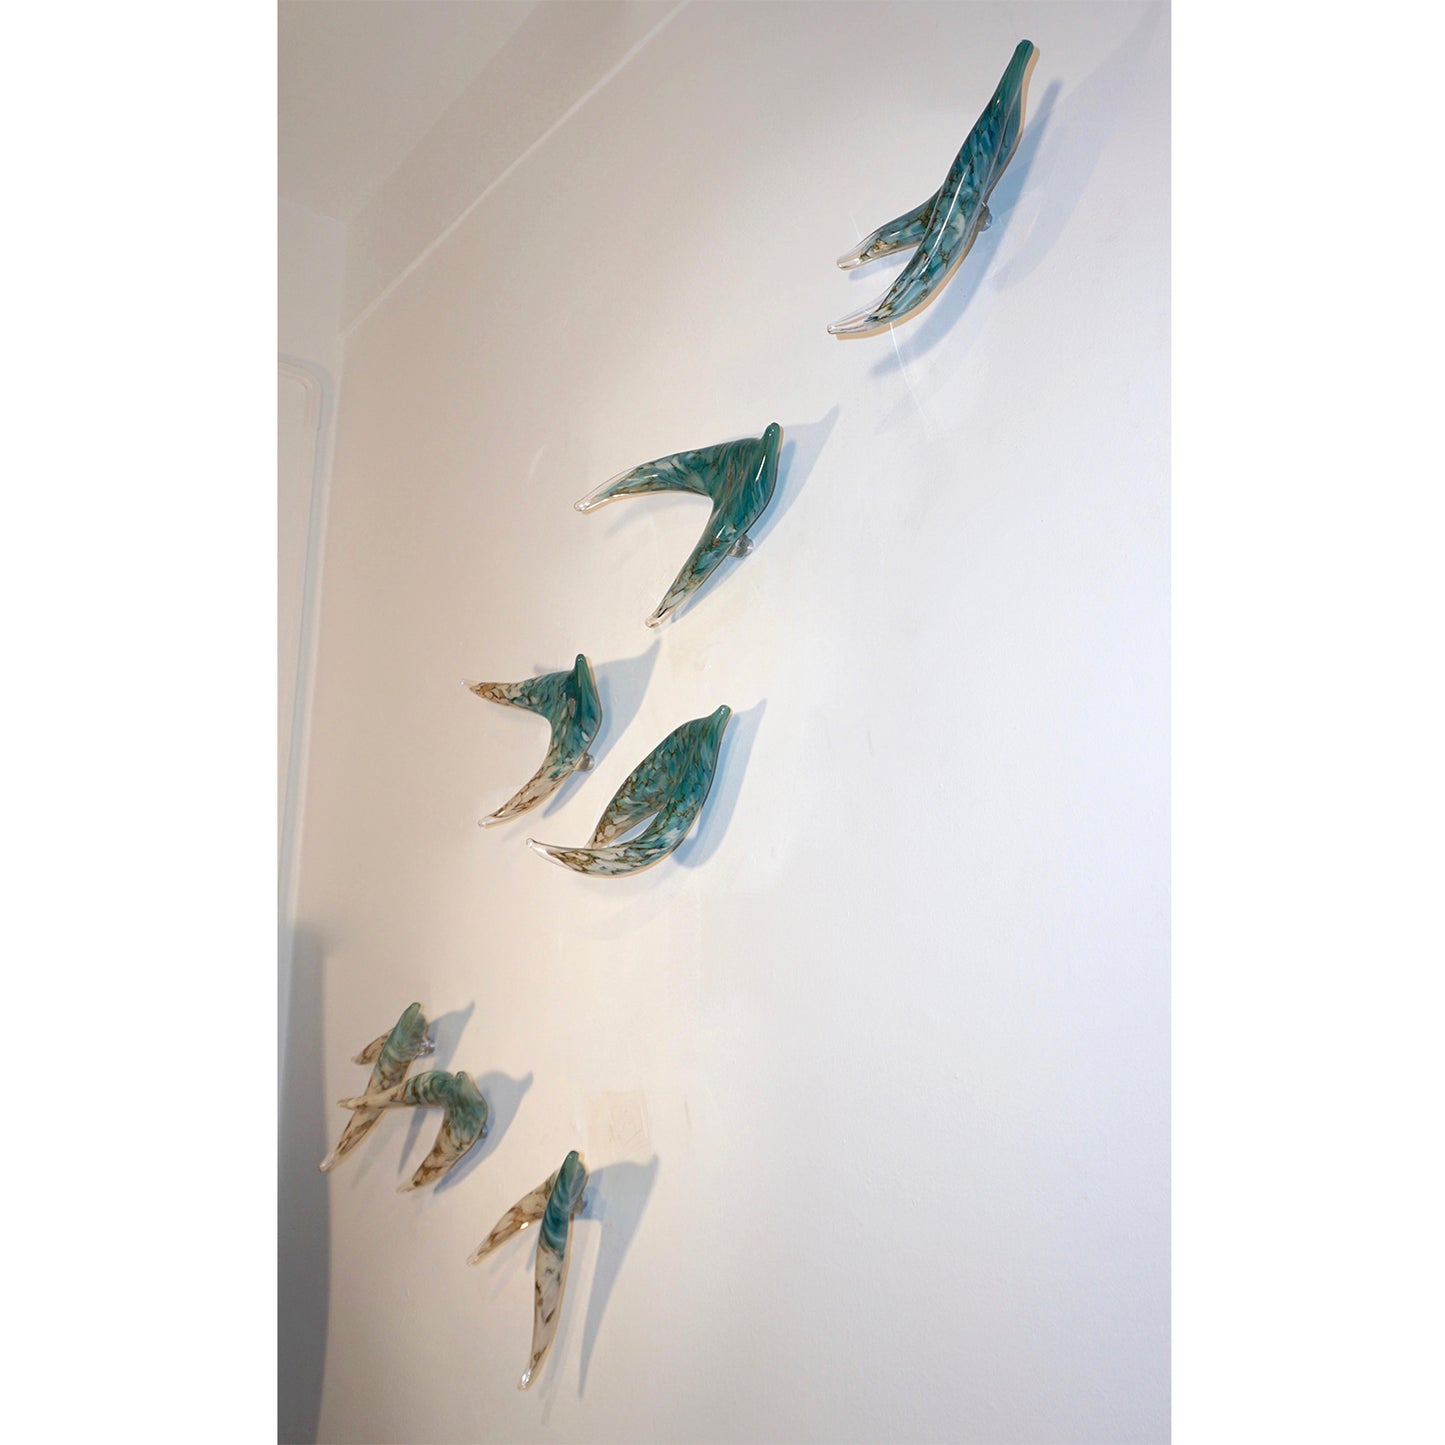 Flight of Aquamarine Birds Contemporary Blown Glass Modern Art Wall Sculpture